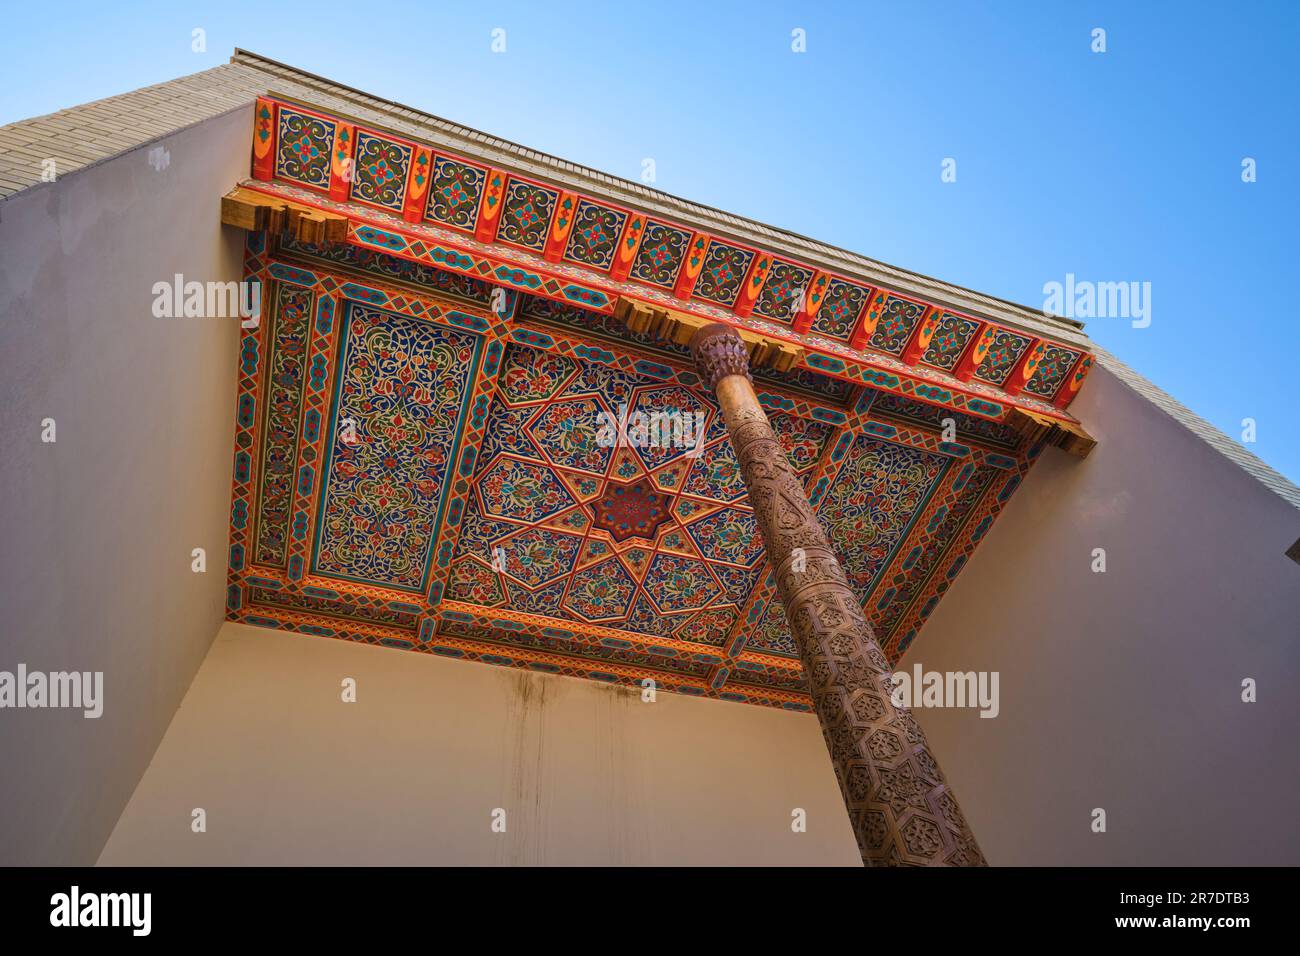 Vista dell'elaborato e colorato dipinto di un soffitto in legno intagliato in un portico tradizionale. Nell'era ricreata, Silk Road guardando villaggio di Anhor p Foto Stock